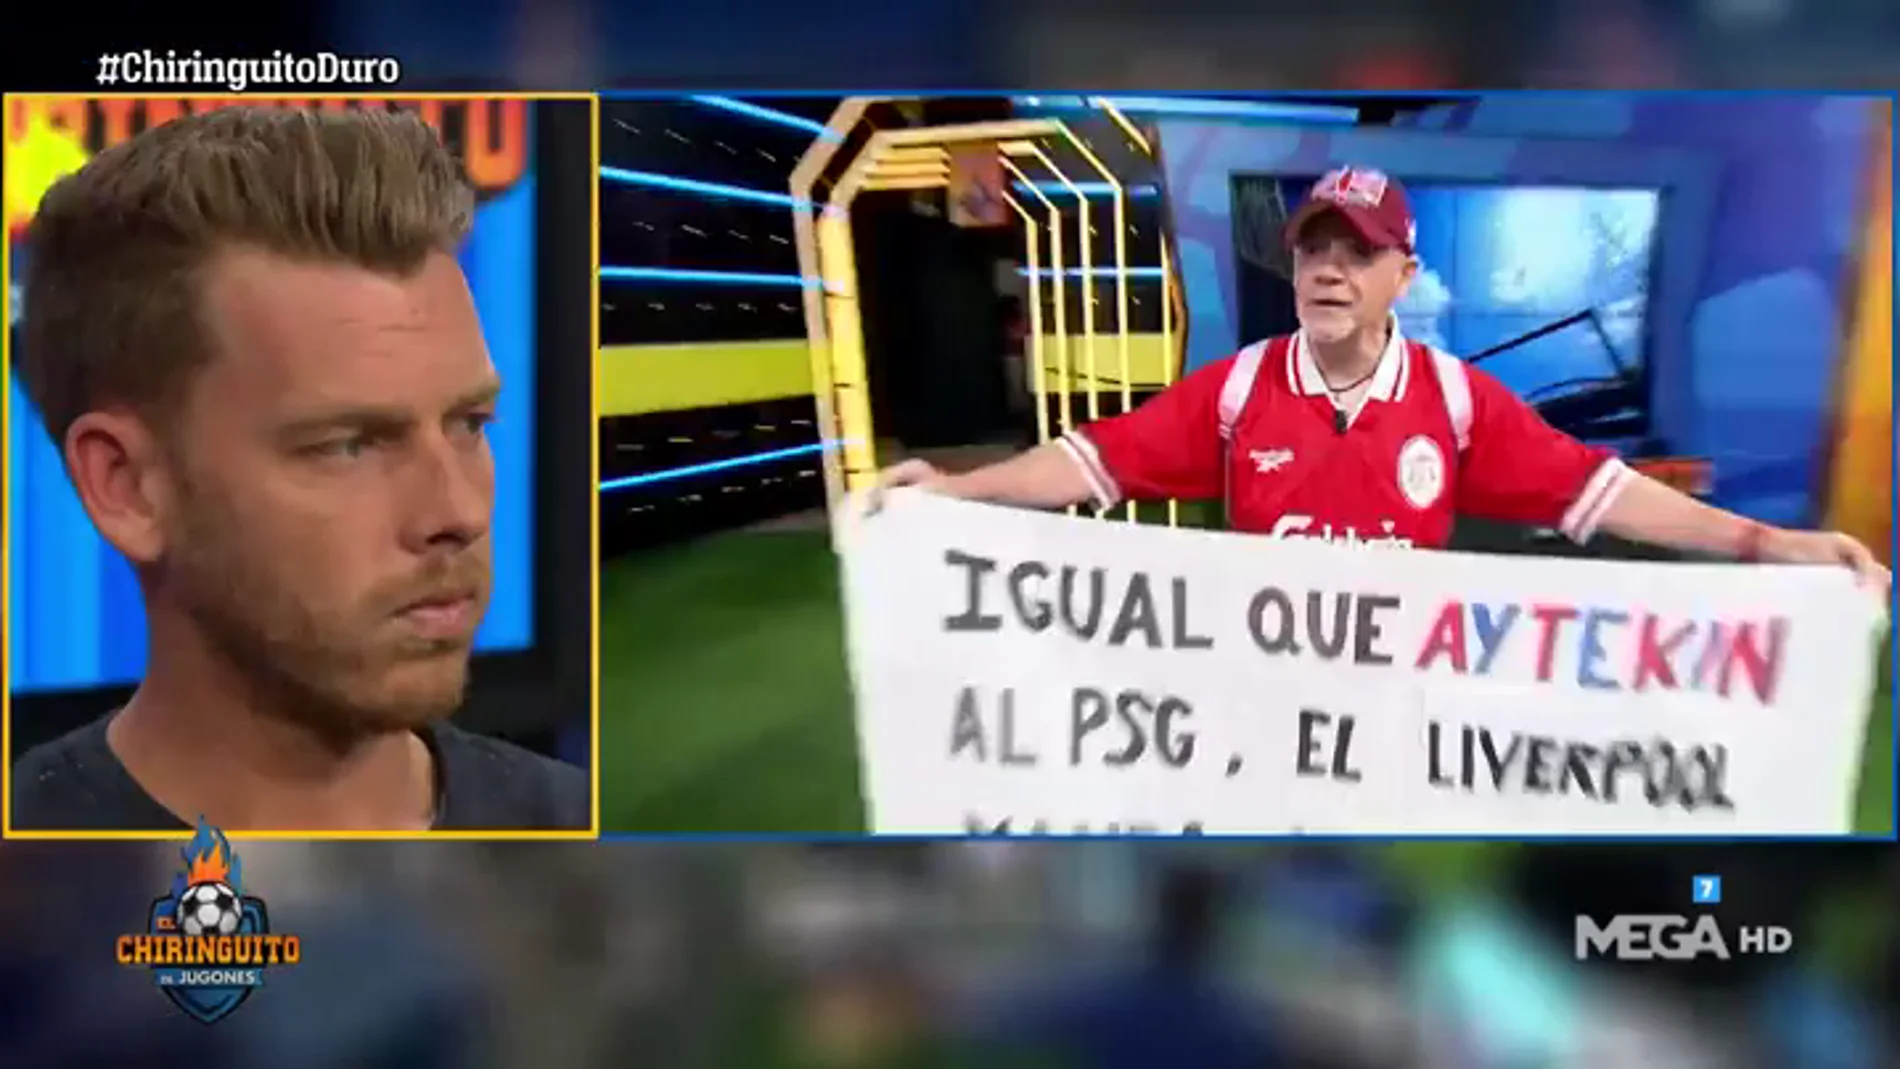 La nueva canción de Alfredo Duro: "Igual que Aytekin al PSG, el Liverpool manda al Barça al carrer"